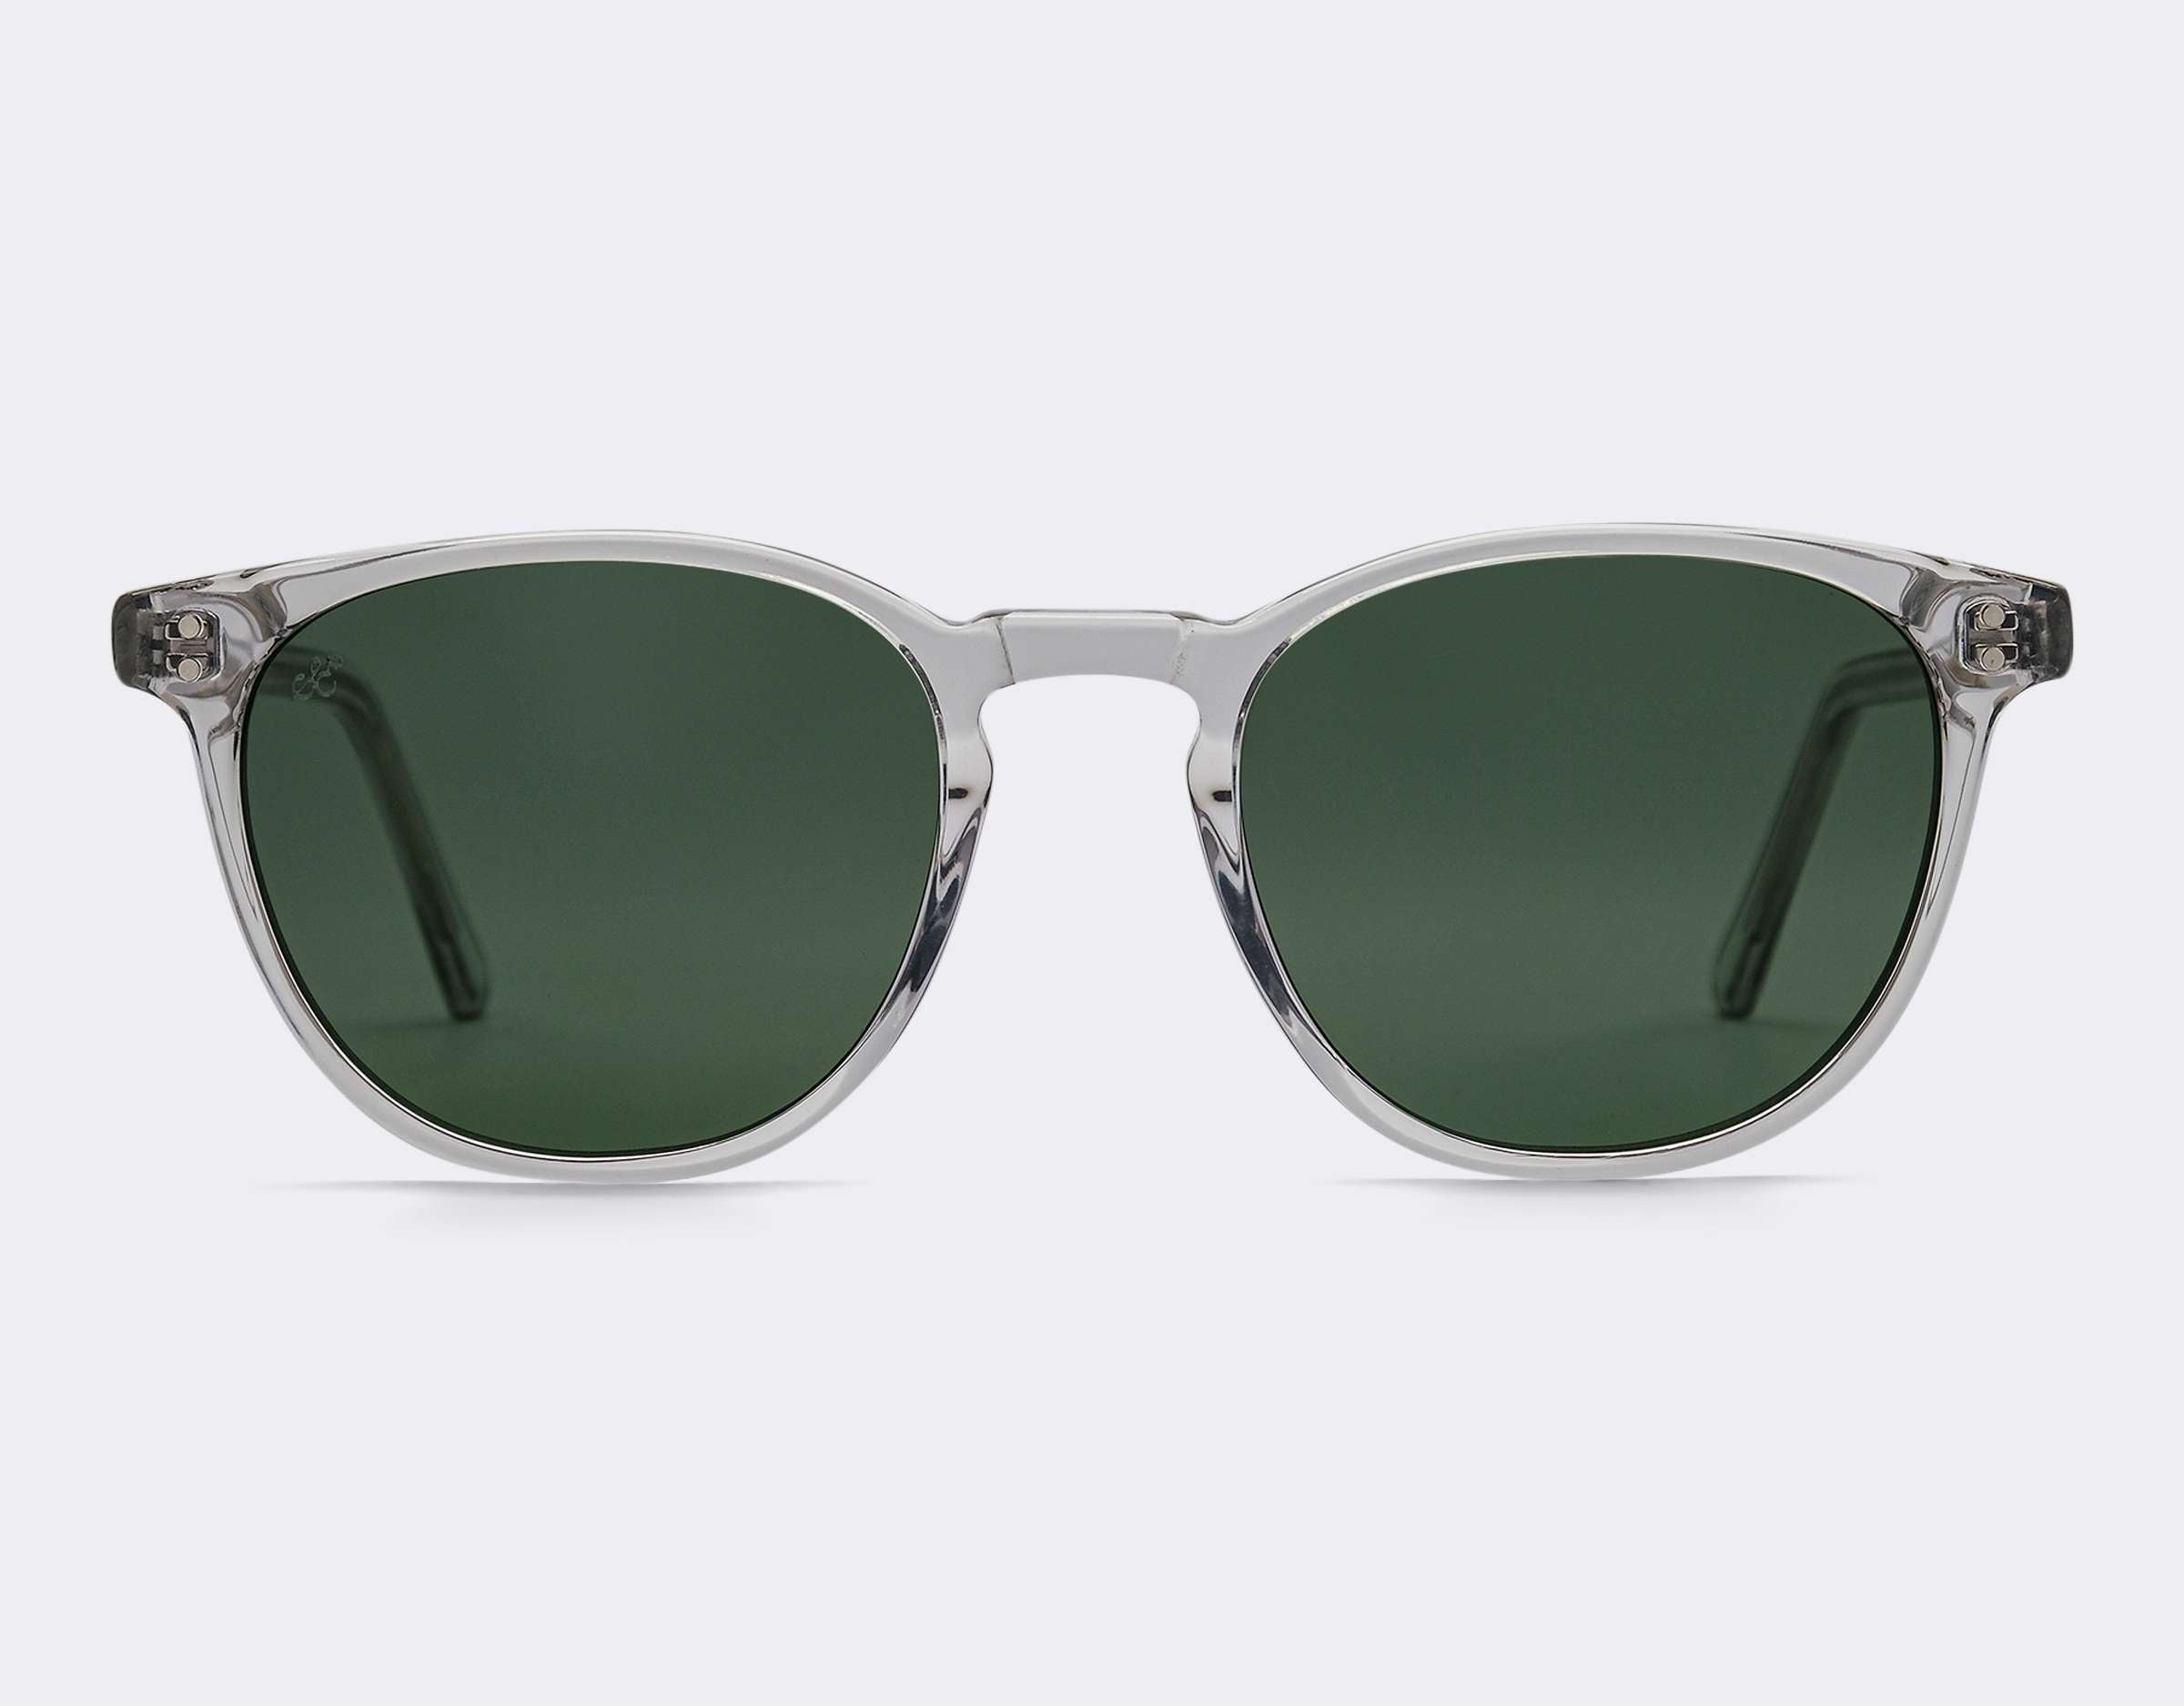 Glenelg Polarised Sunglasses SummerEyez Crystal - Olive Green 